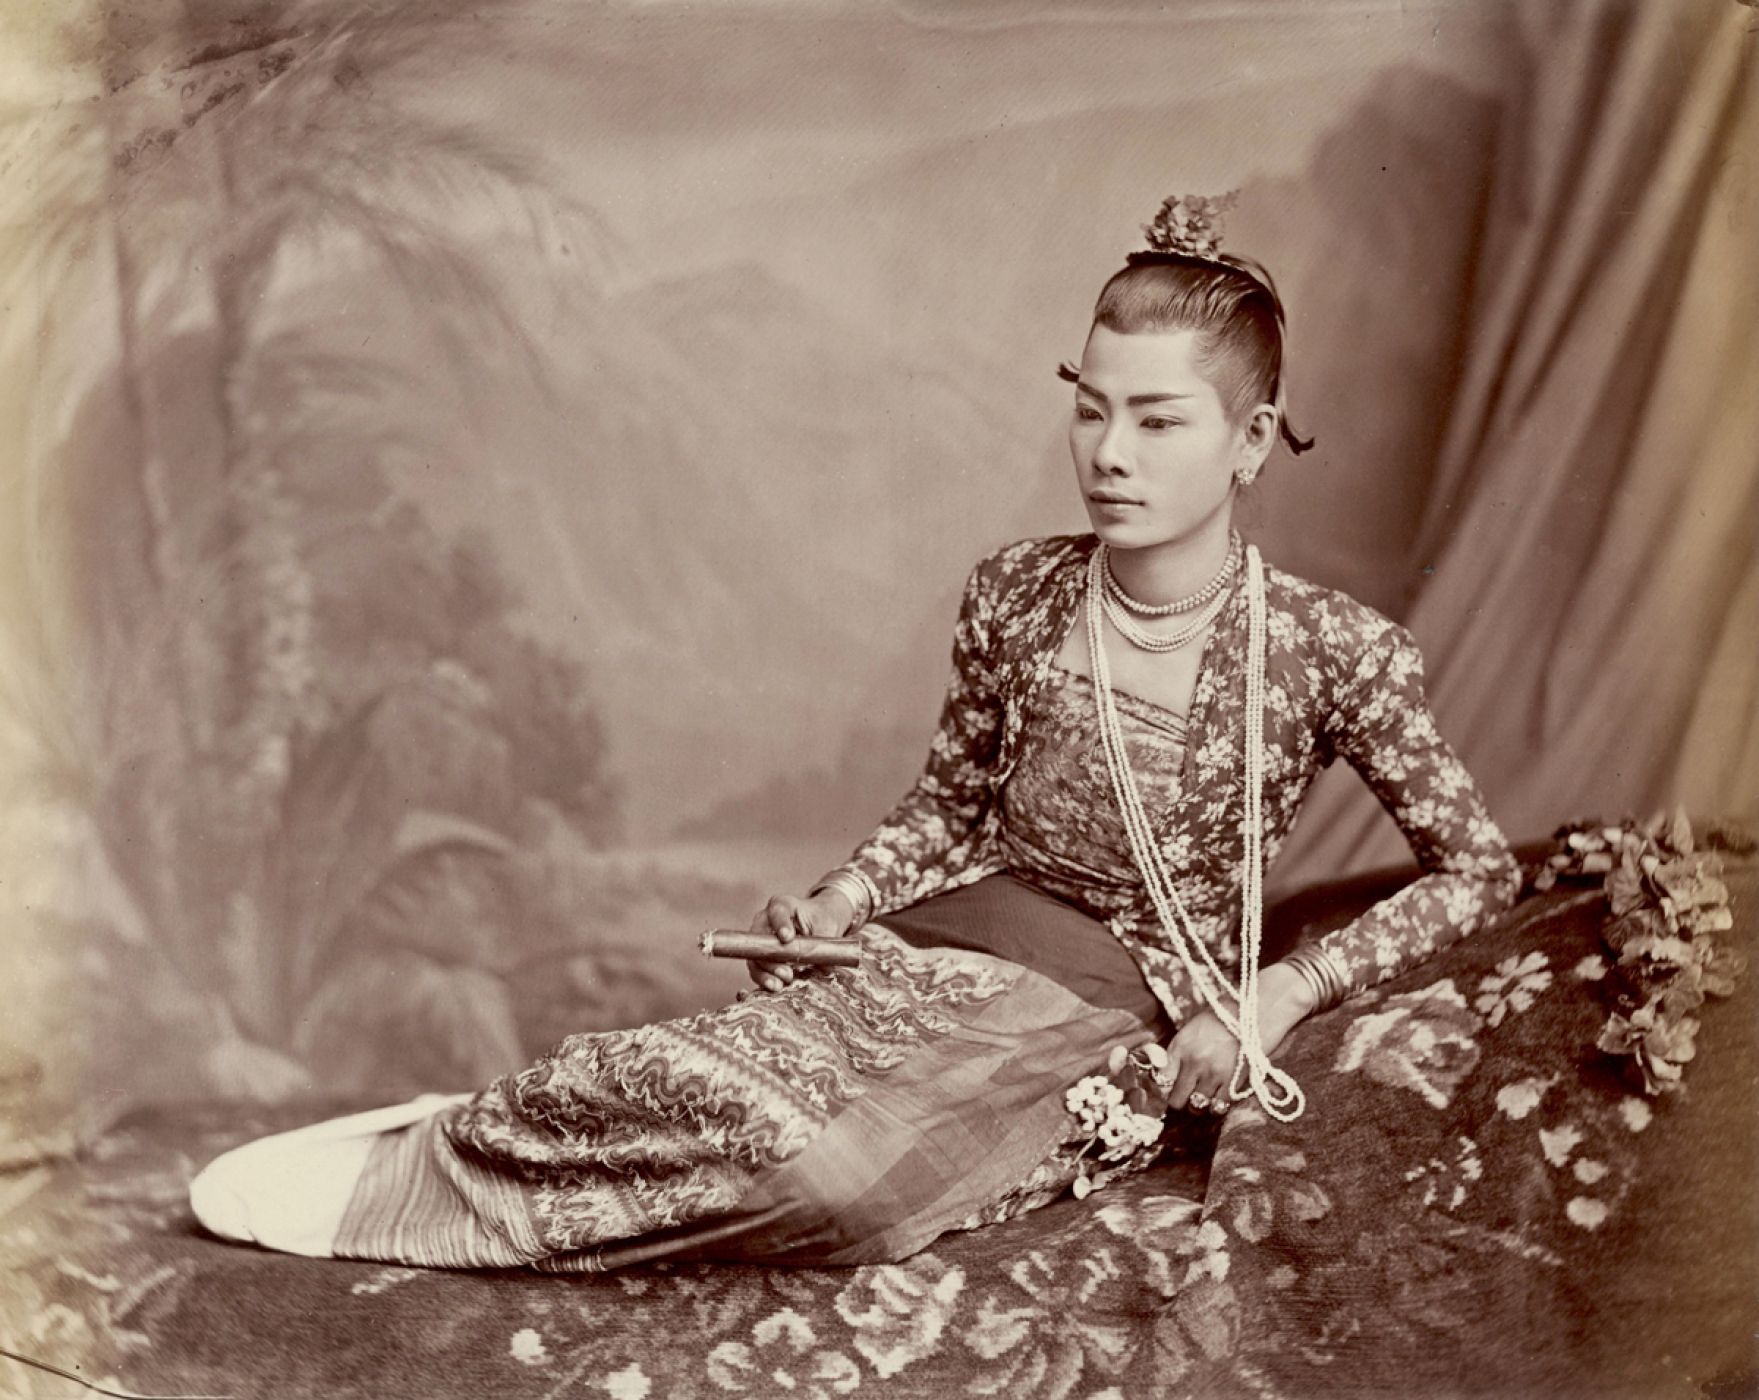 Émile Gsell, “Portrait d'une danseuse birmane, Ladyboy”, 1883